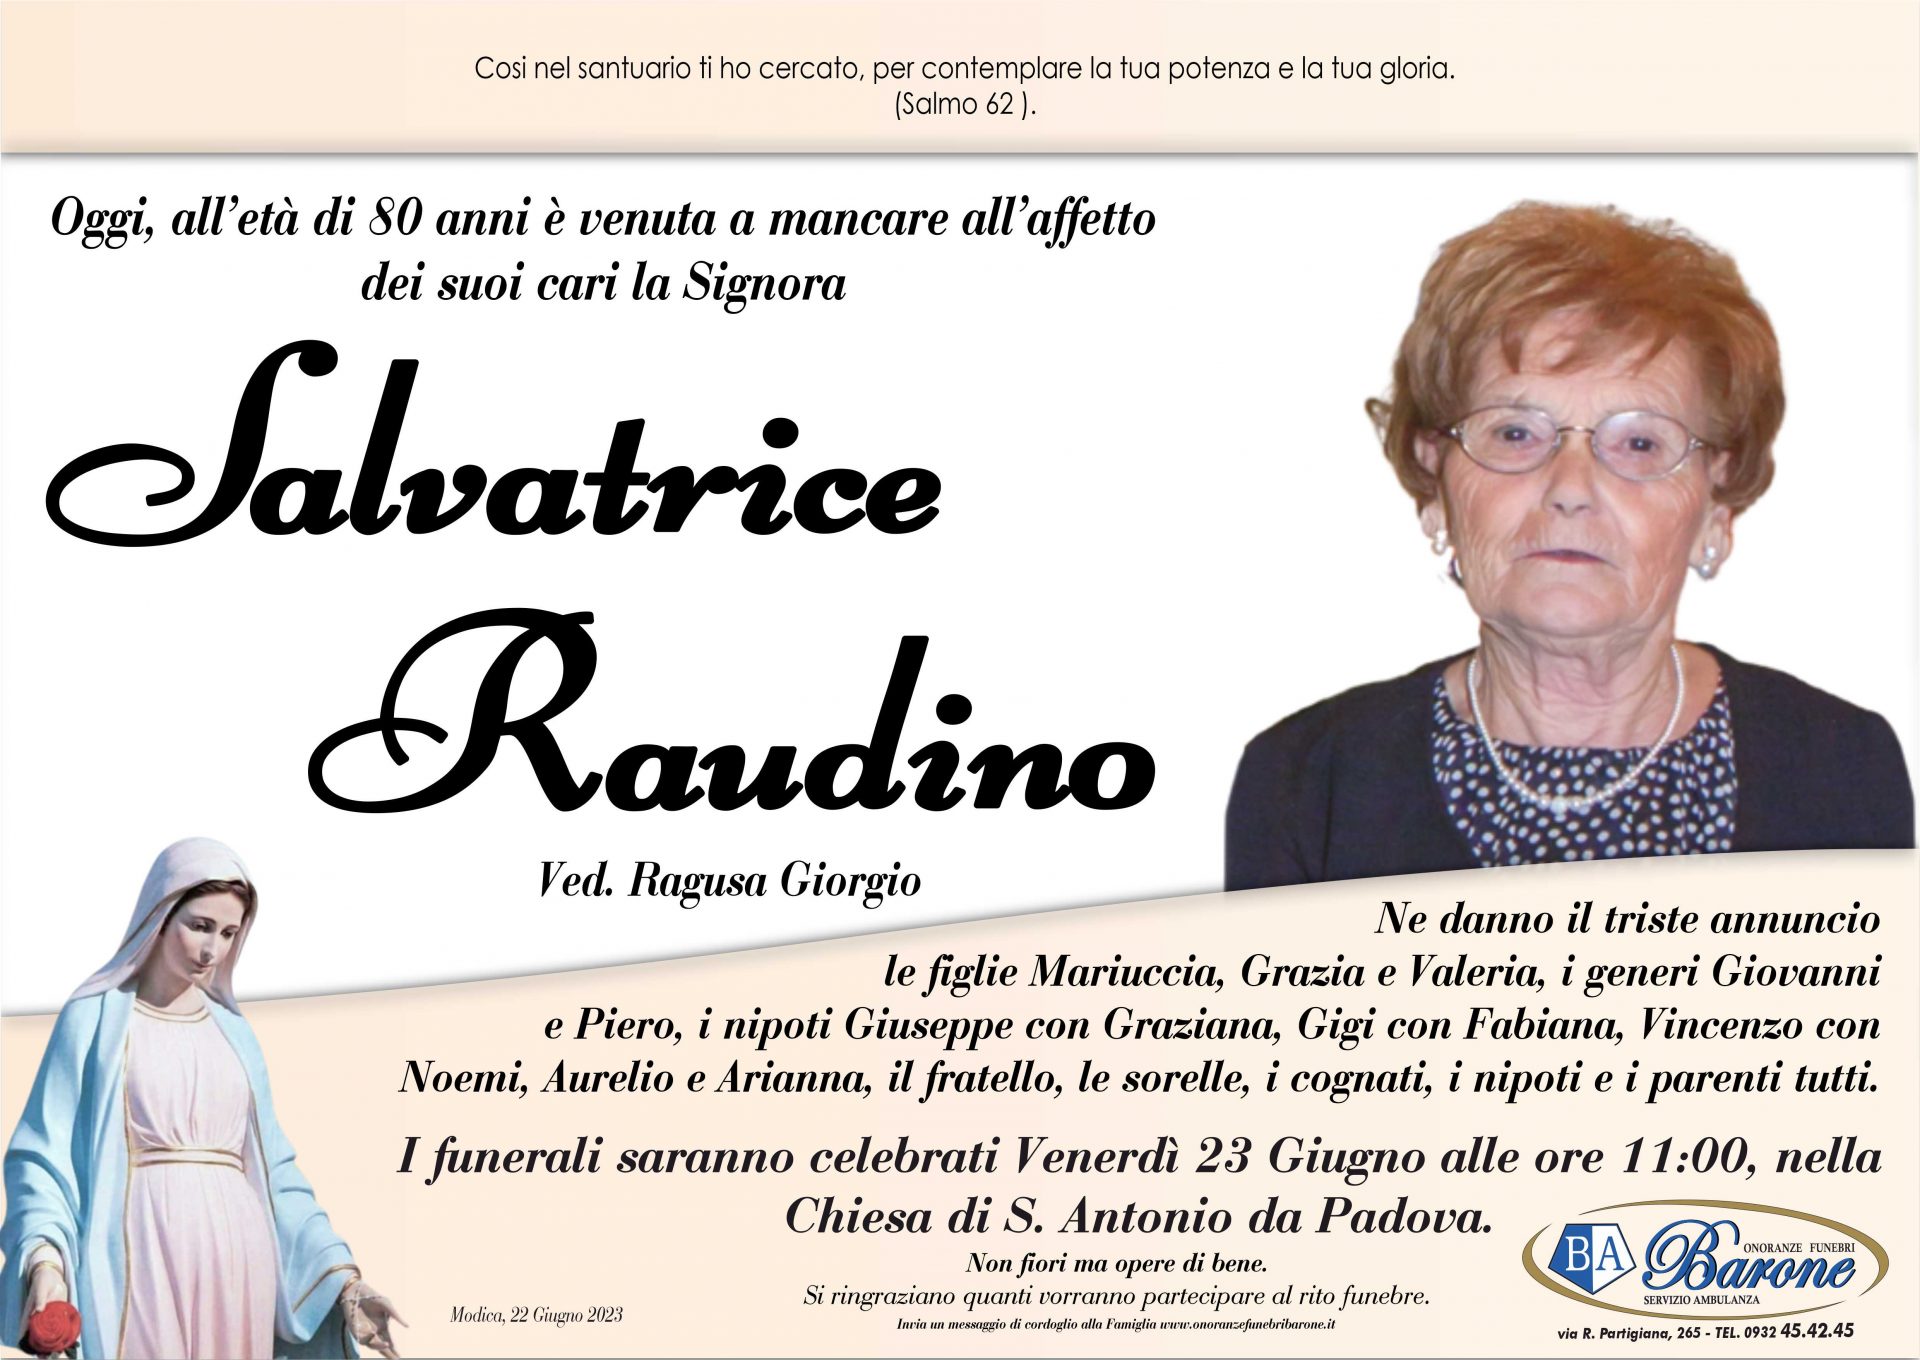 Salvatrice Raudino